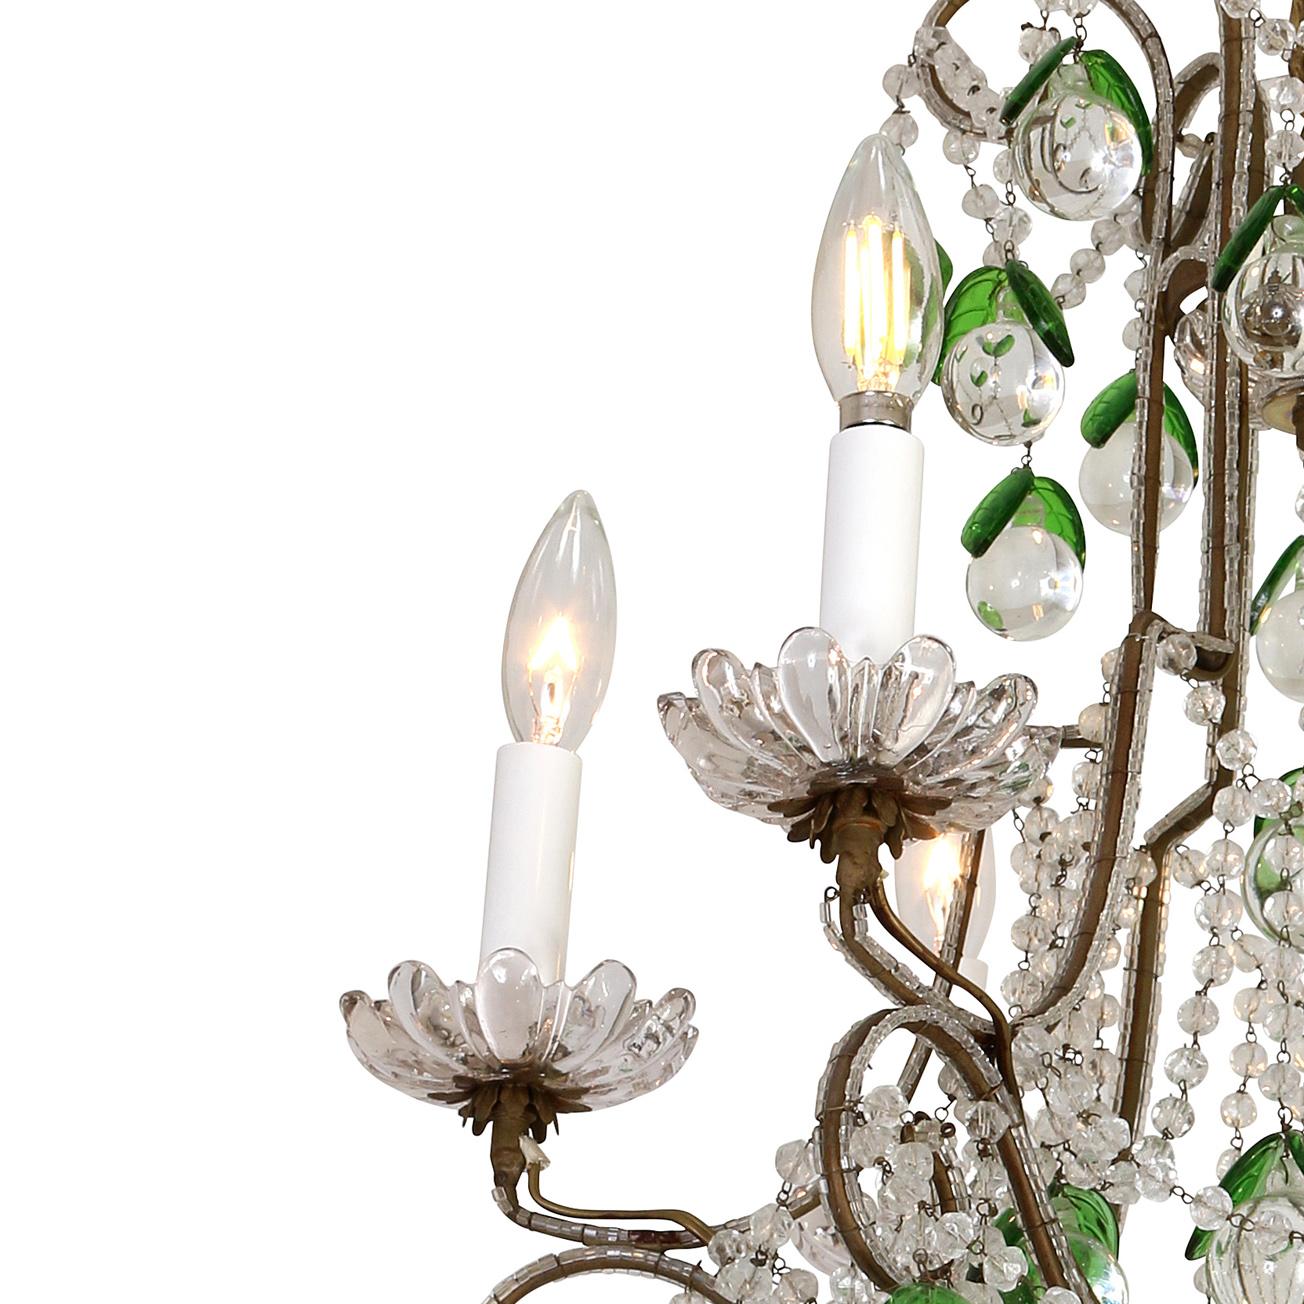 Ce lustre fantaisiste en cristal et en fer est composé de six bras avec de jolies bouquets floraux.  Le cadre en fer argenté est décoré de boules et de perles de cristal, accentuées par des feuilles de verre vertes.  La taille moyenne de cette pièce